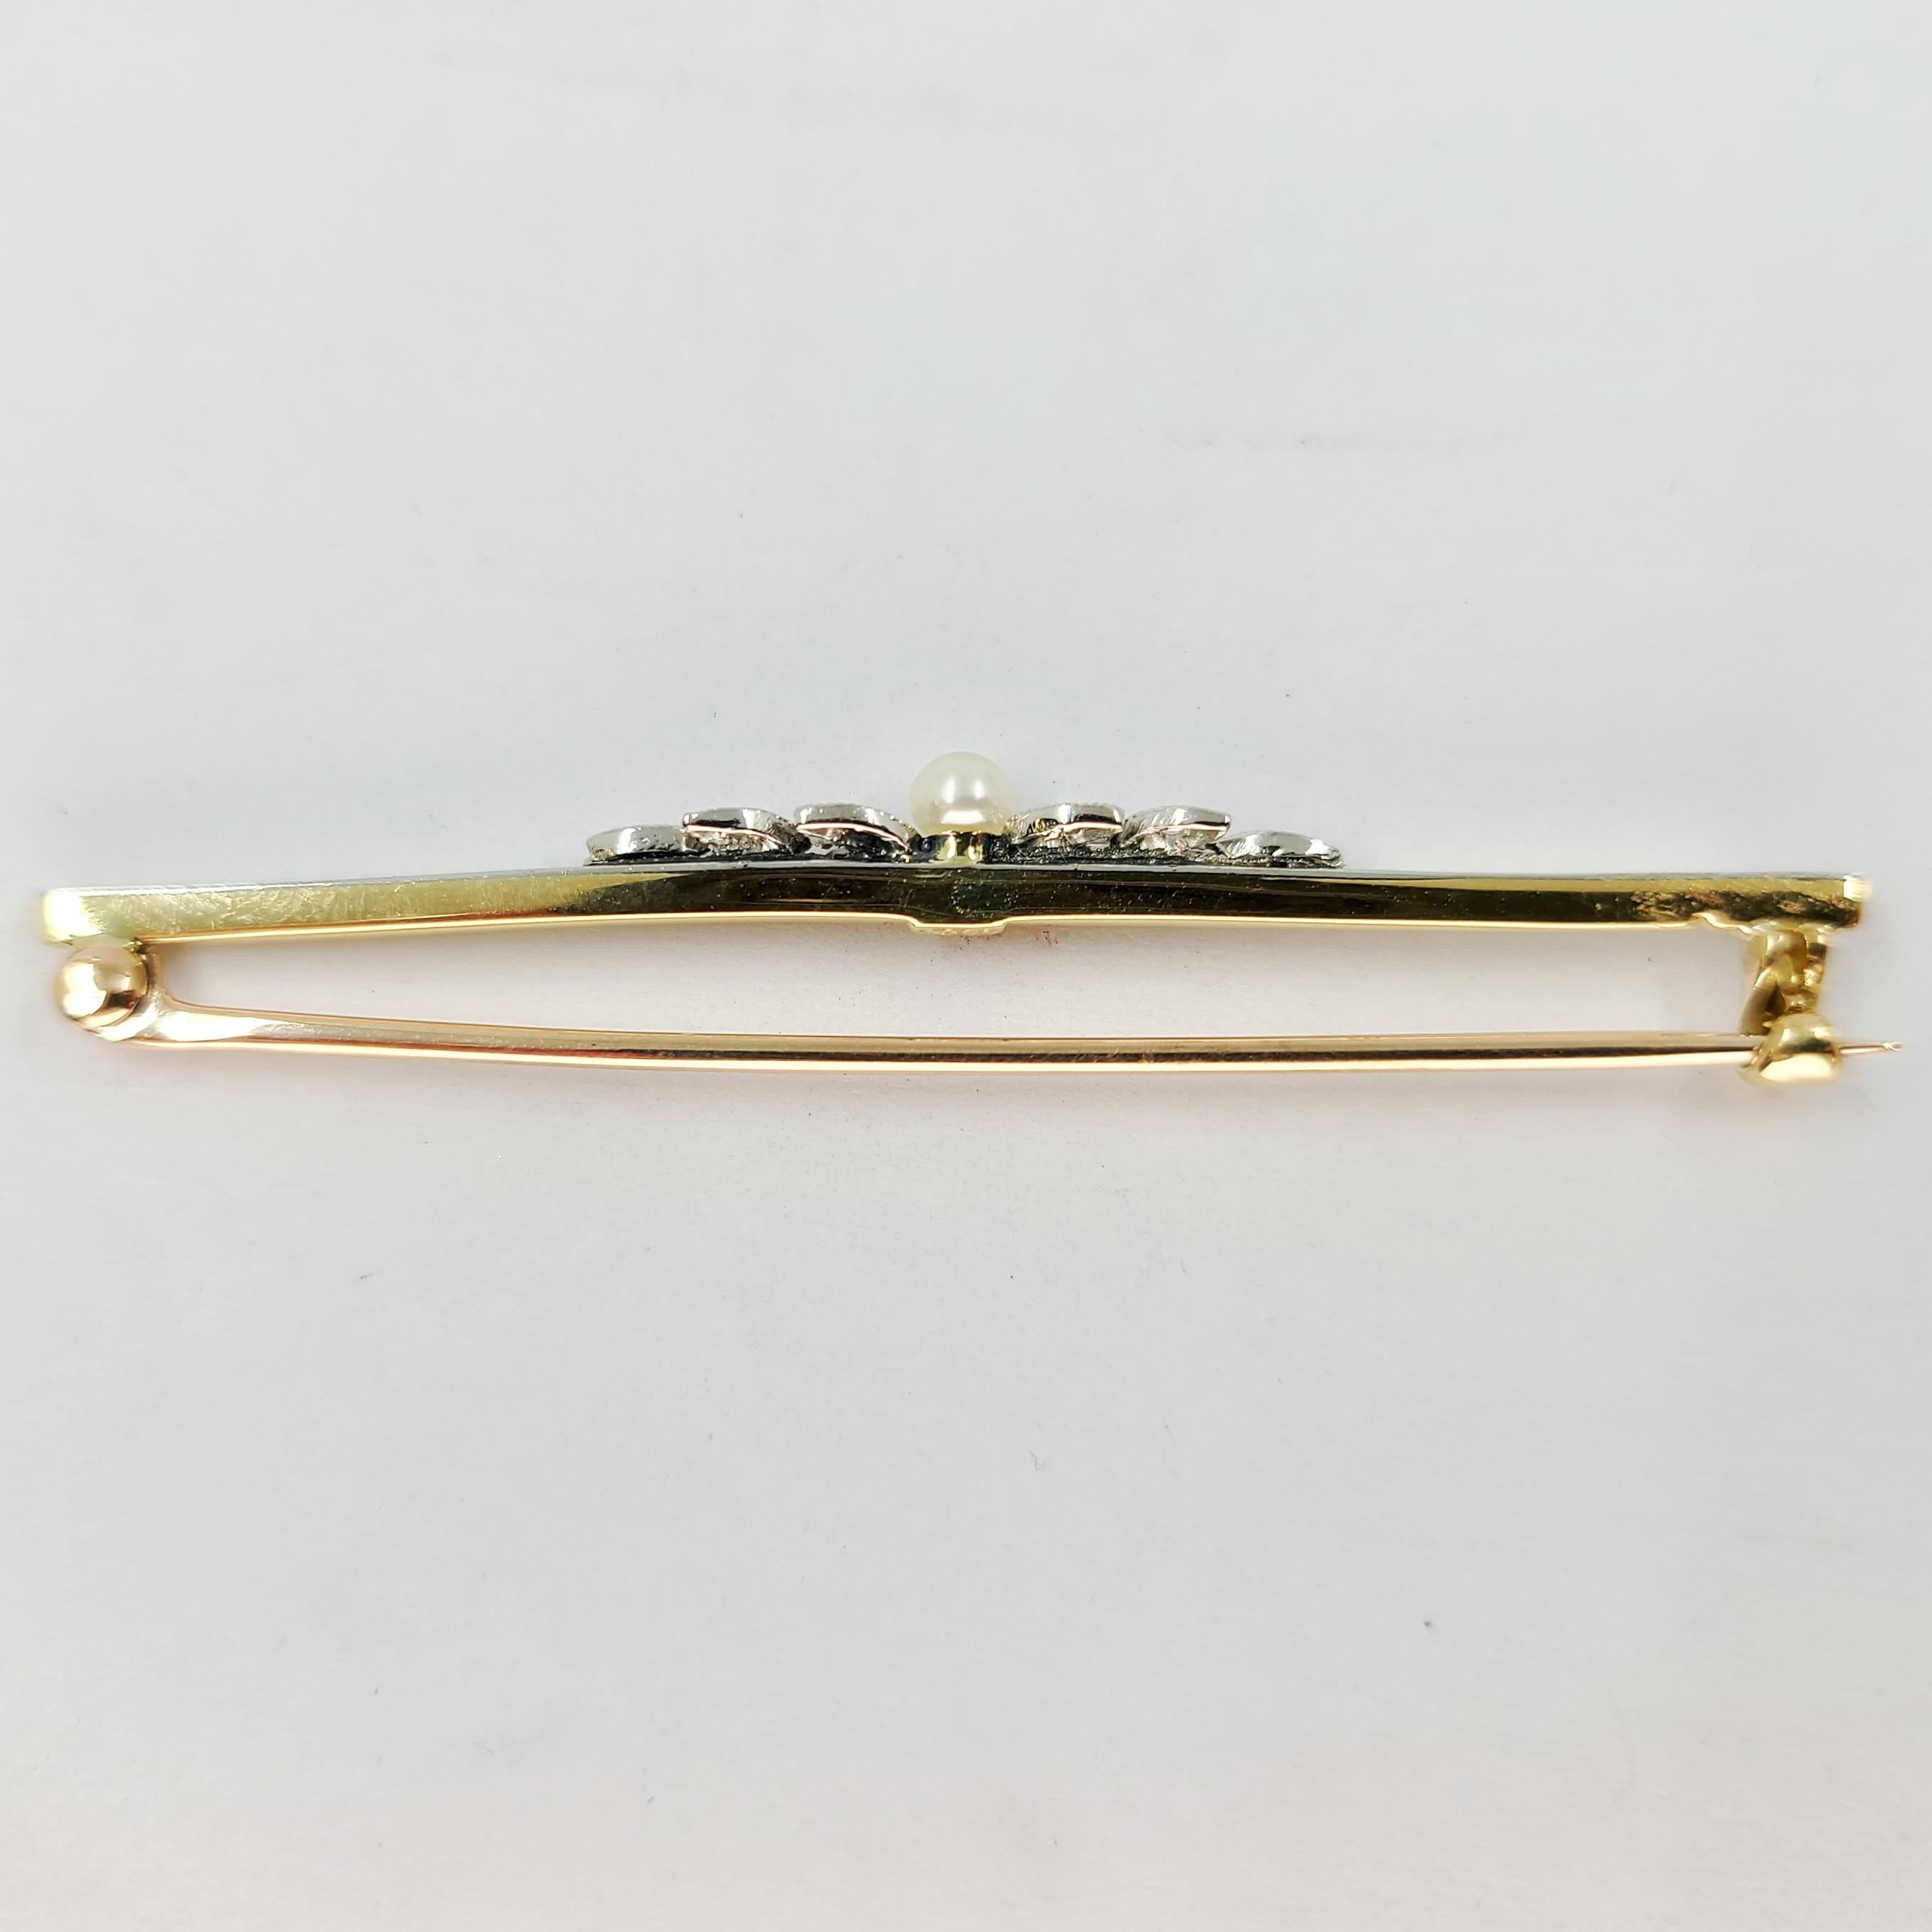 18 Karat Gelbgold Pin mit 10 Diamanten in Höhe von ca. 0,05ct & 1 kleine Perle (vermutlich gezüchtet). 2 Zoll lang. Das fertige Gewicht beträgt 3,5 Gramm.